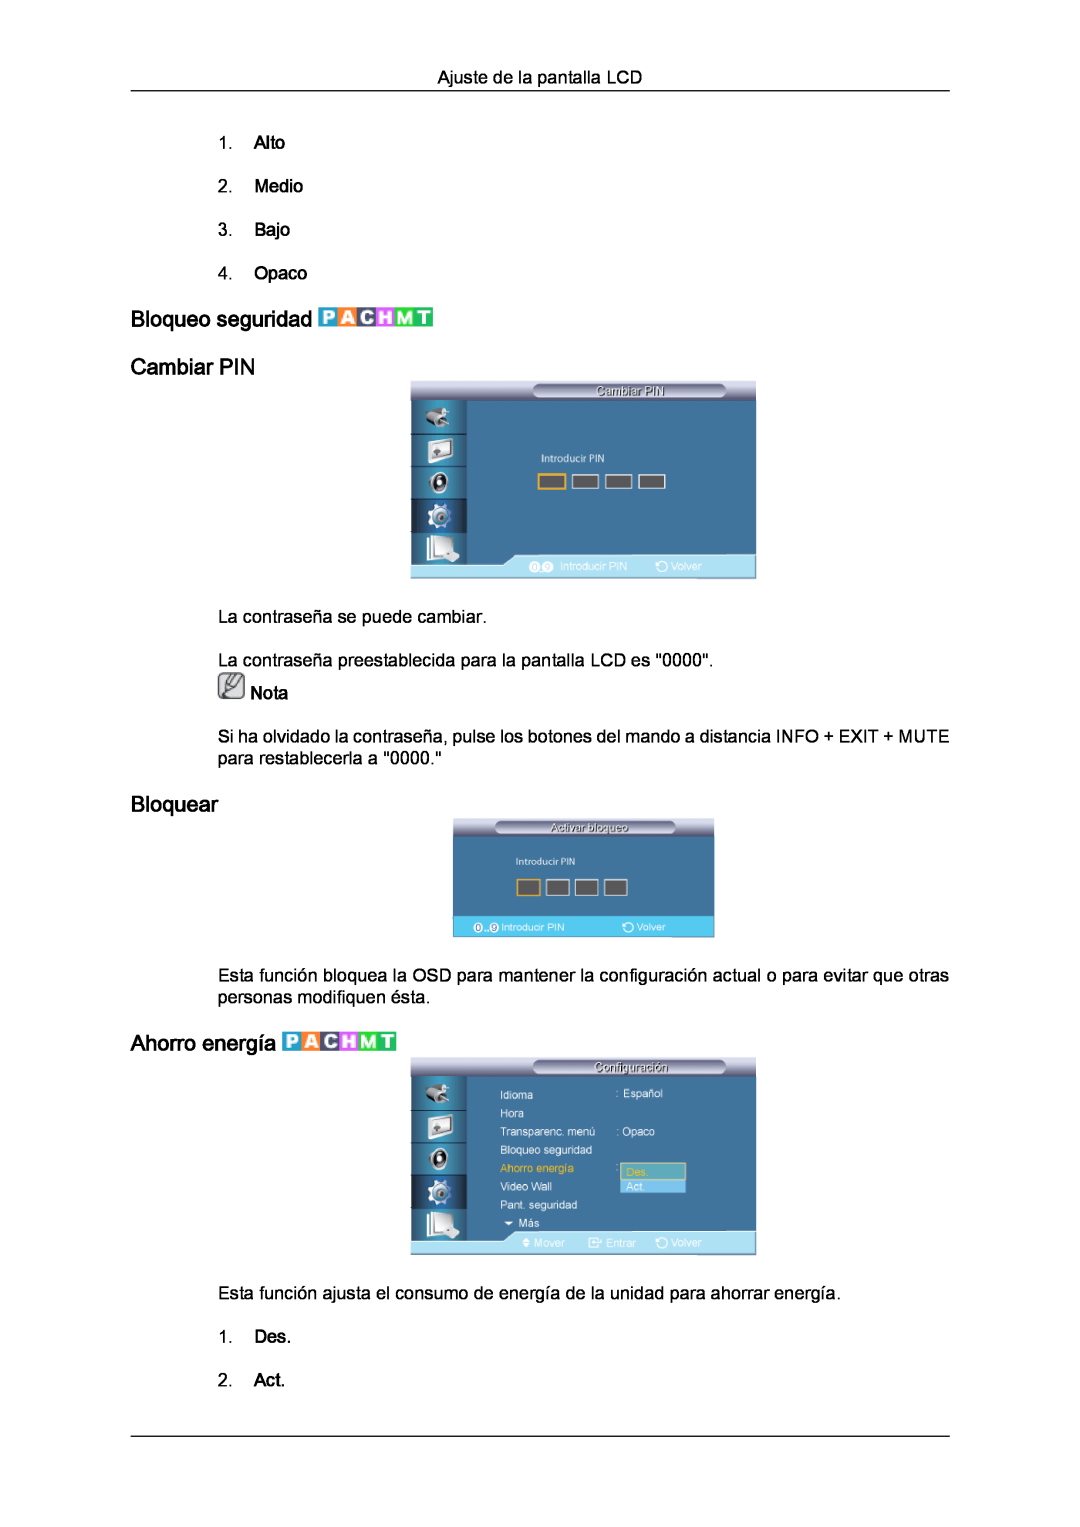 Samsung LH46CRPMBC/EN manual Bloqueo seguridad Cambiar PIN, Bloquear, Ahorro energía, Alto 2. Medio 3. Bajo 4. Opaco, Nota 